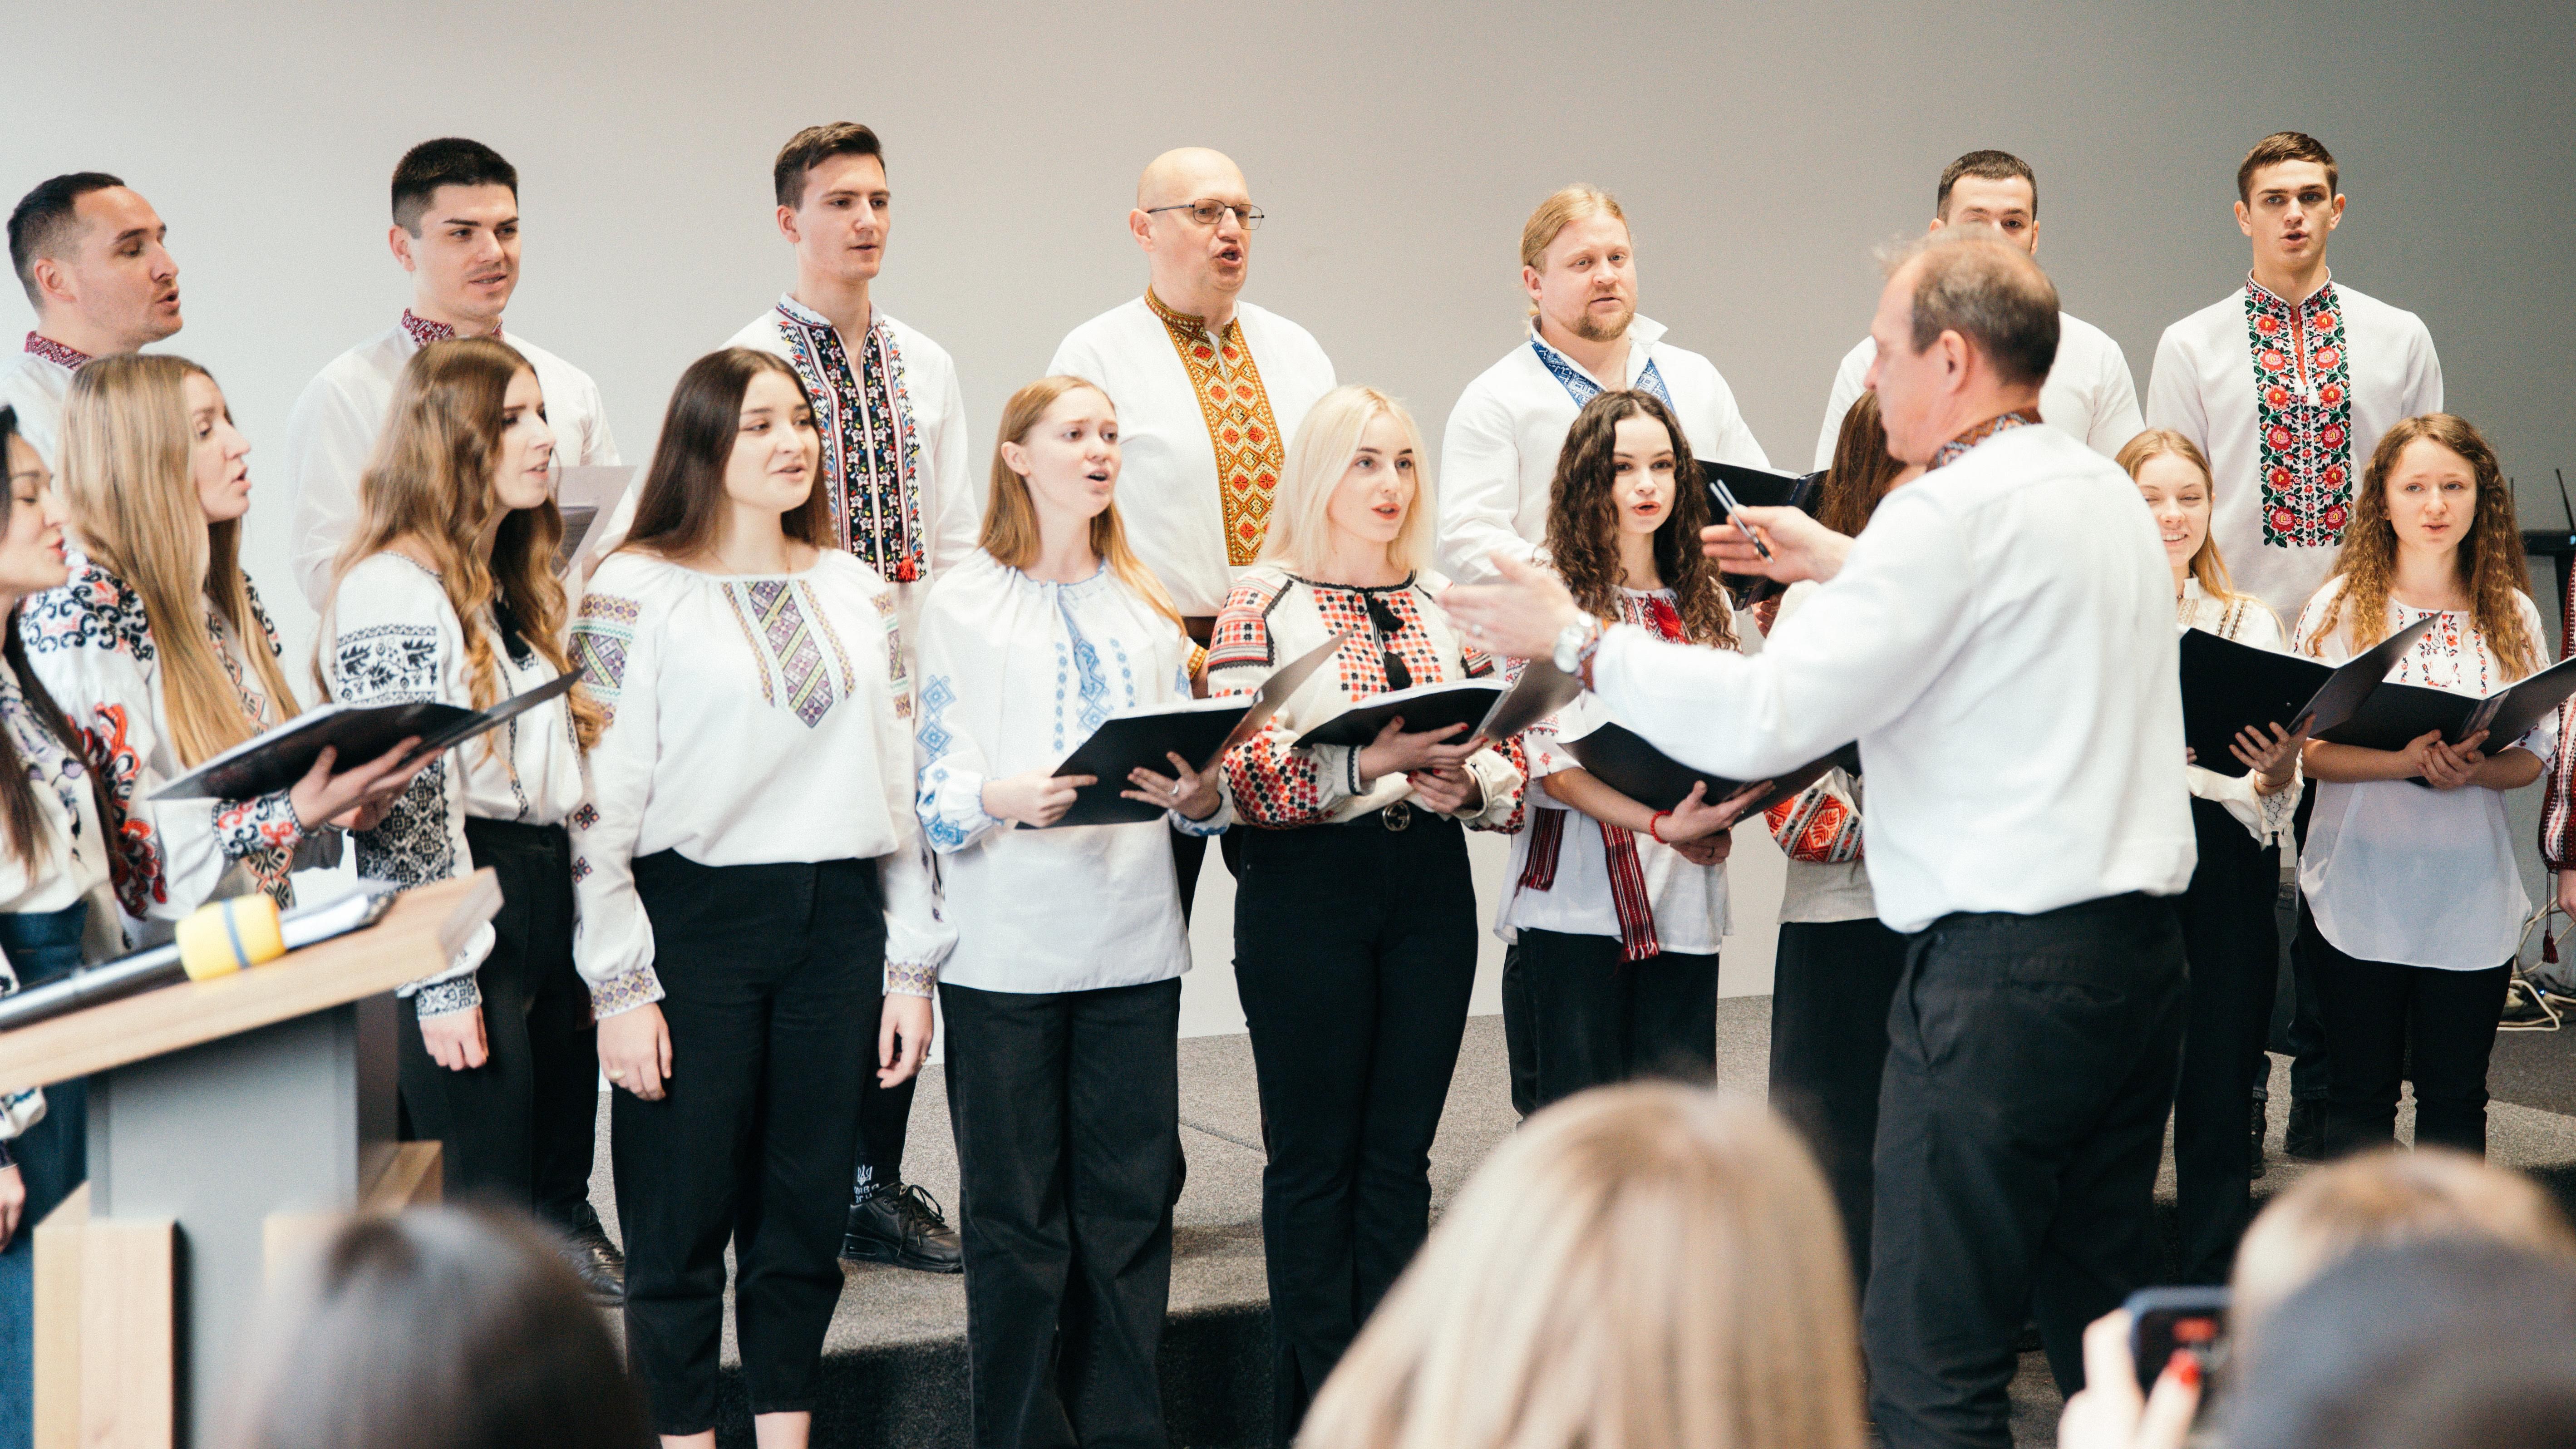 Викладачі кафедри естрадно-вокального мистецтва УКД привітали колег та студентів з прийдешнім Різдвом